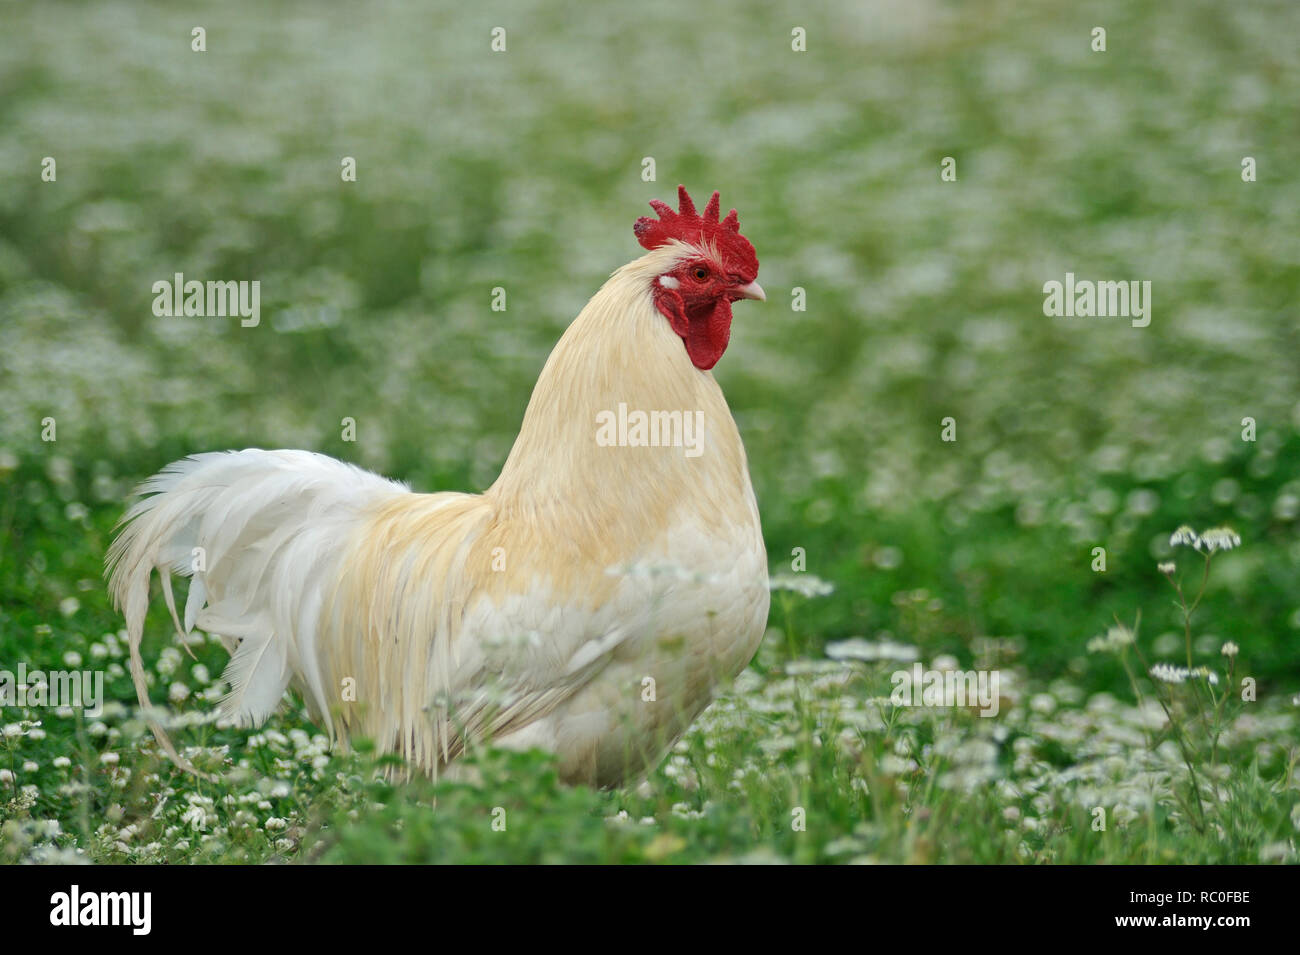 Hühner in freier Natur auf der Wiese Stock Photo